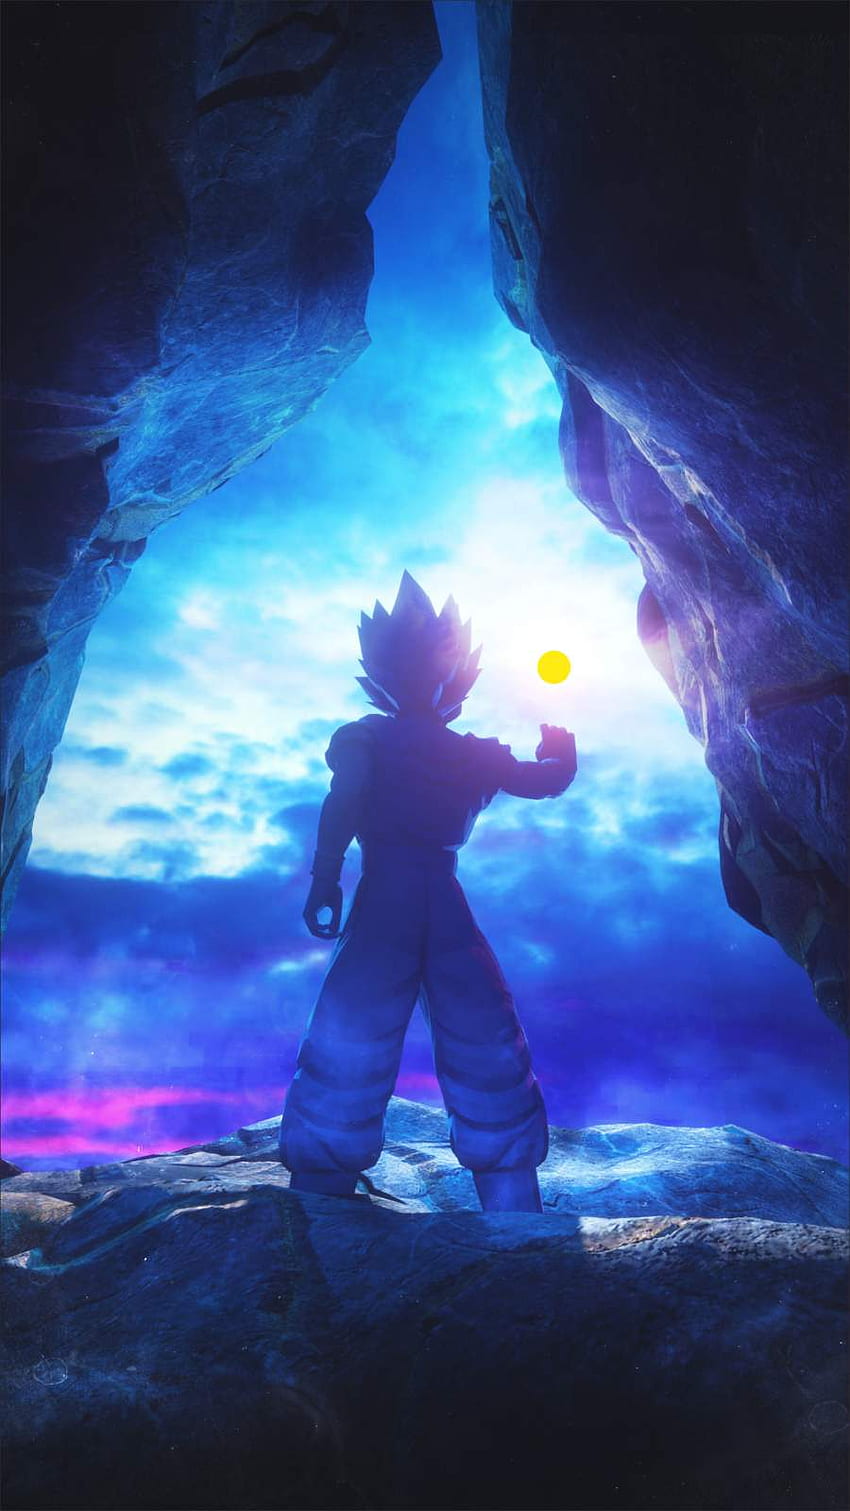 Đam mê Dragon Ball? Hãy xem những hình nền Goku tuyệt đẹp đầy sức mạnh và nghị lực trên màn hình của bạn. Với chất lượng ảnh HD, hình ảnh Goku trong các tư thế khác nhau sẽ tái hiện lại trước mắt bạn như một sự thử thách để trở thành chiến binh đích thực.